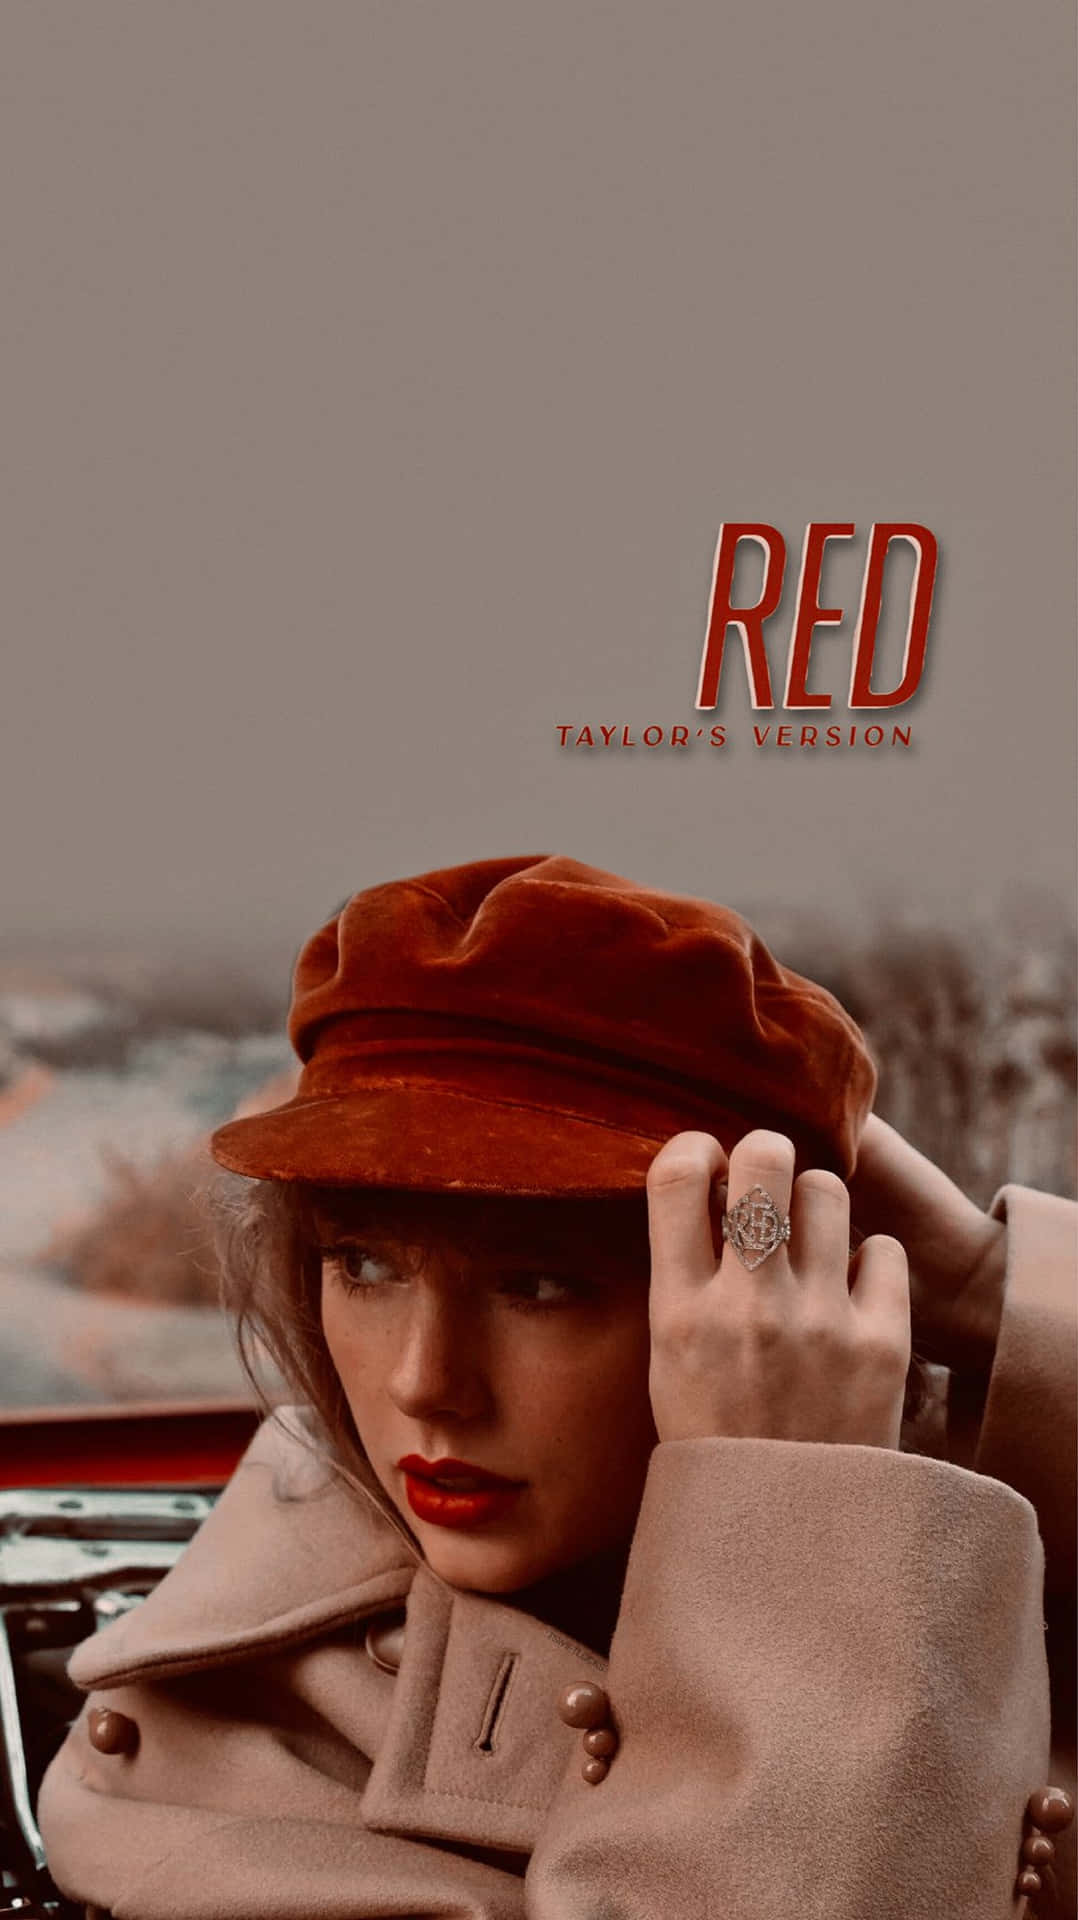 Redtaylor's Version - L'album Ridisegnato Di Taylor Swift Sfondo